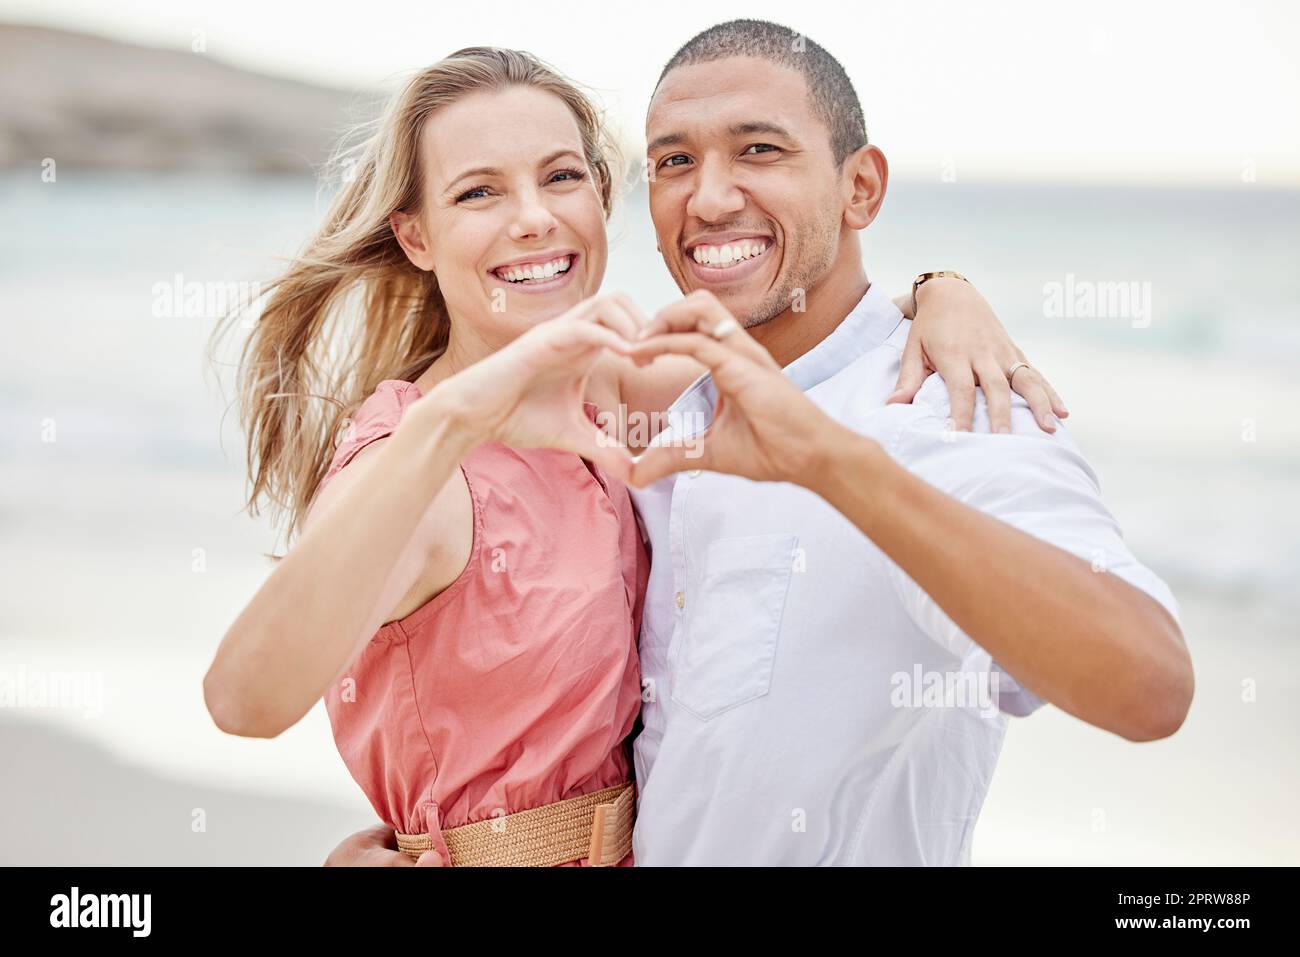 Felici coppie interrazziali mostrano il segno del cuore con le mani e si godono l'aria fresca in vacanza in spiaggia mentre si legano. Ritratto di coppia che abbraccia l'oceano con sorriso e amore insieme in vacanza Foto Stock